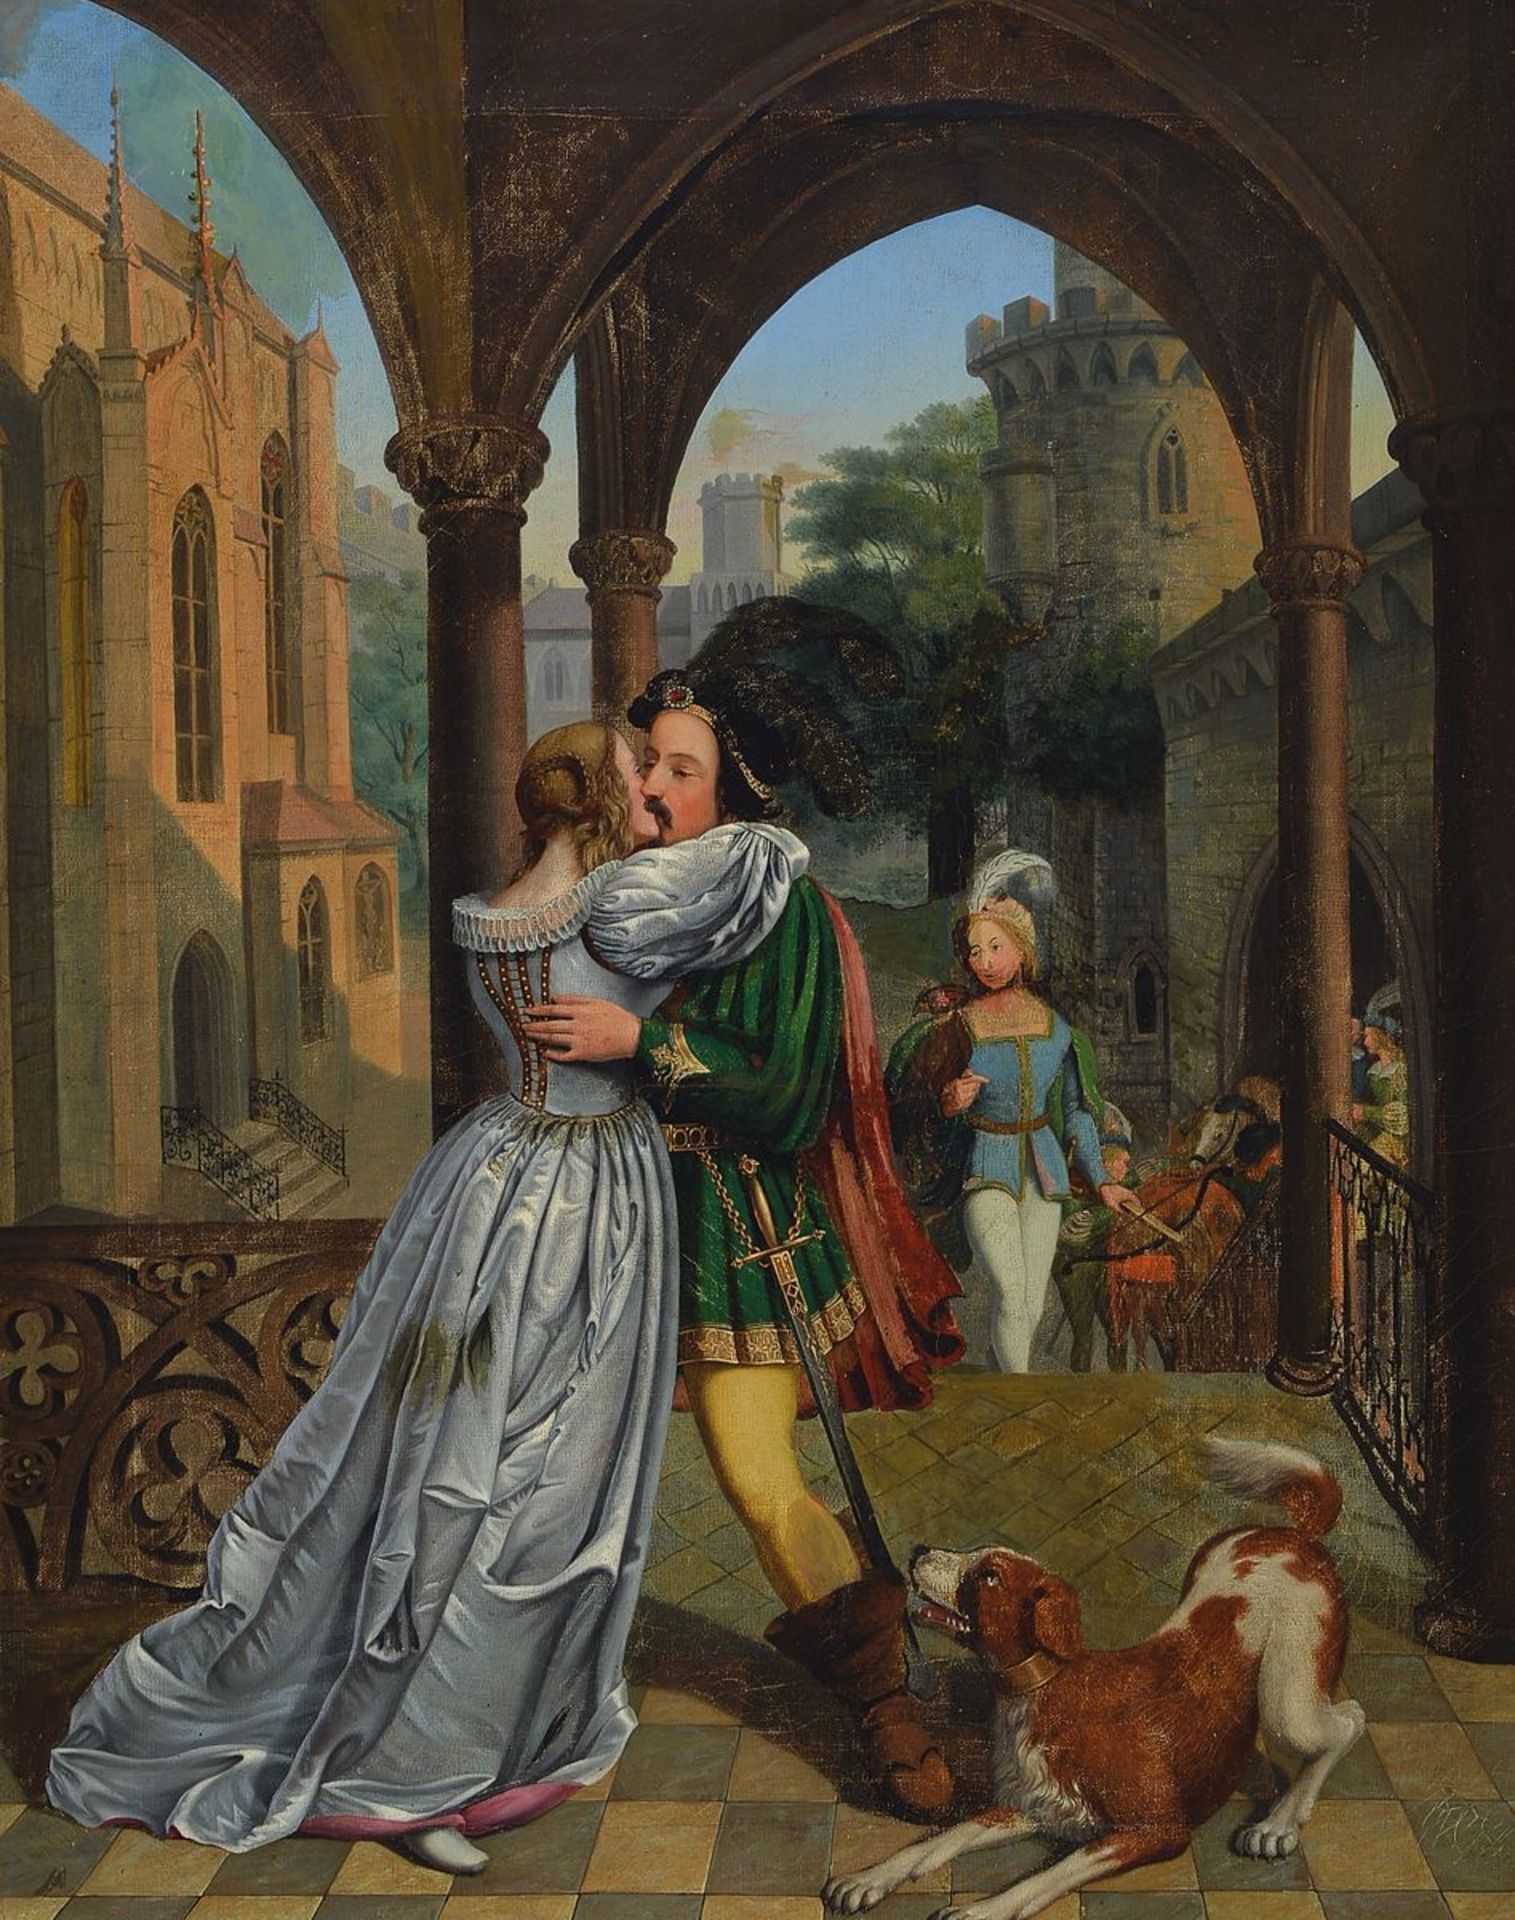 Unbekannter Künstler des 19. Jh., sich küssendes mittelalterliches Paar unter einem Torbogen im